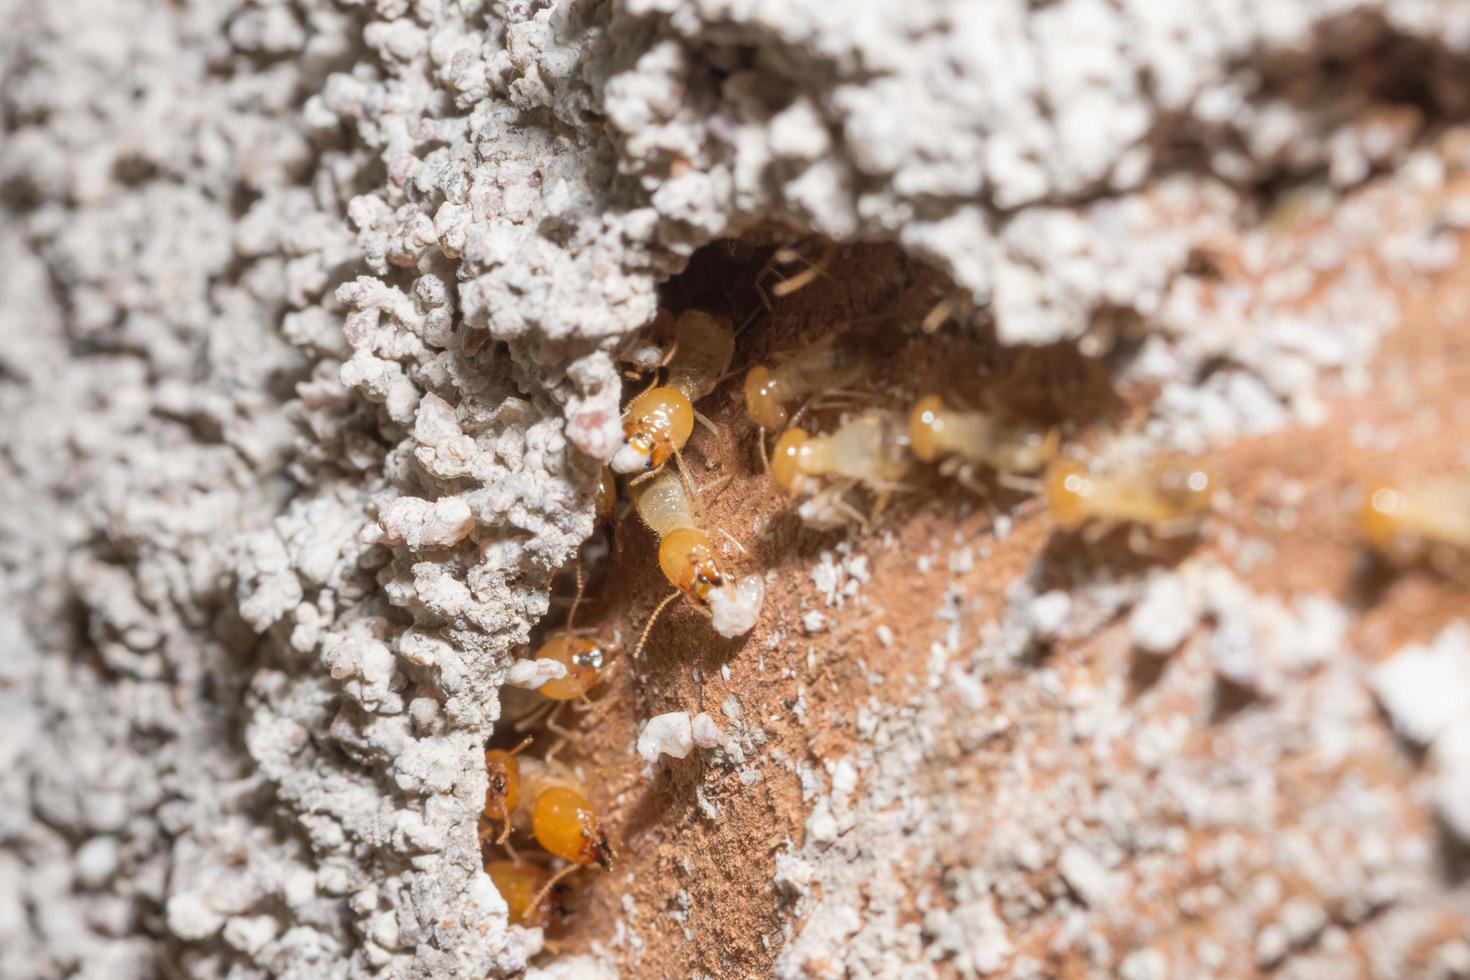 termieten op een logboek foto